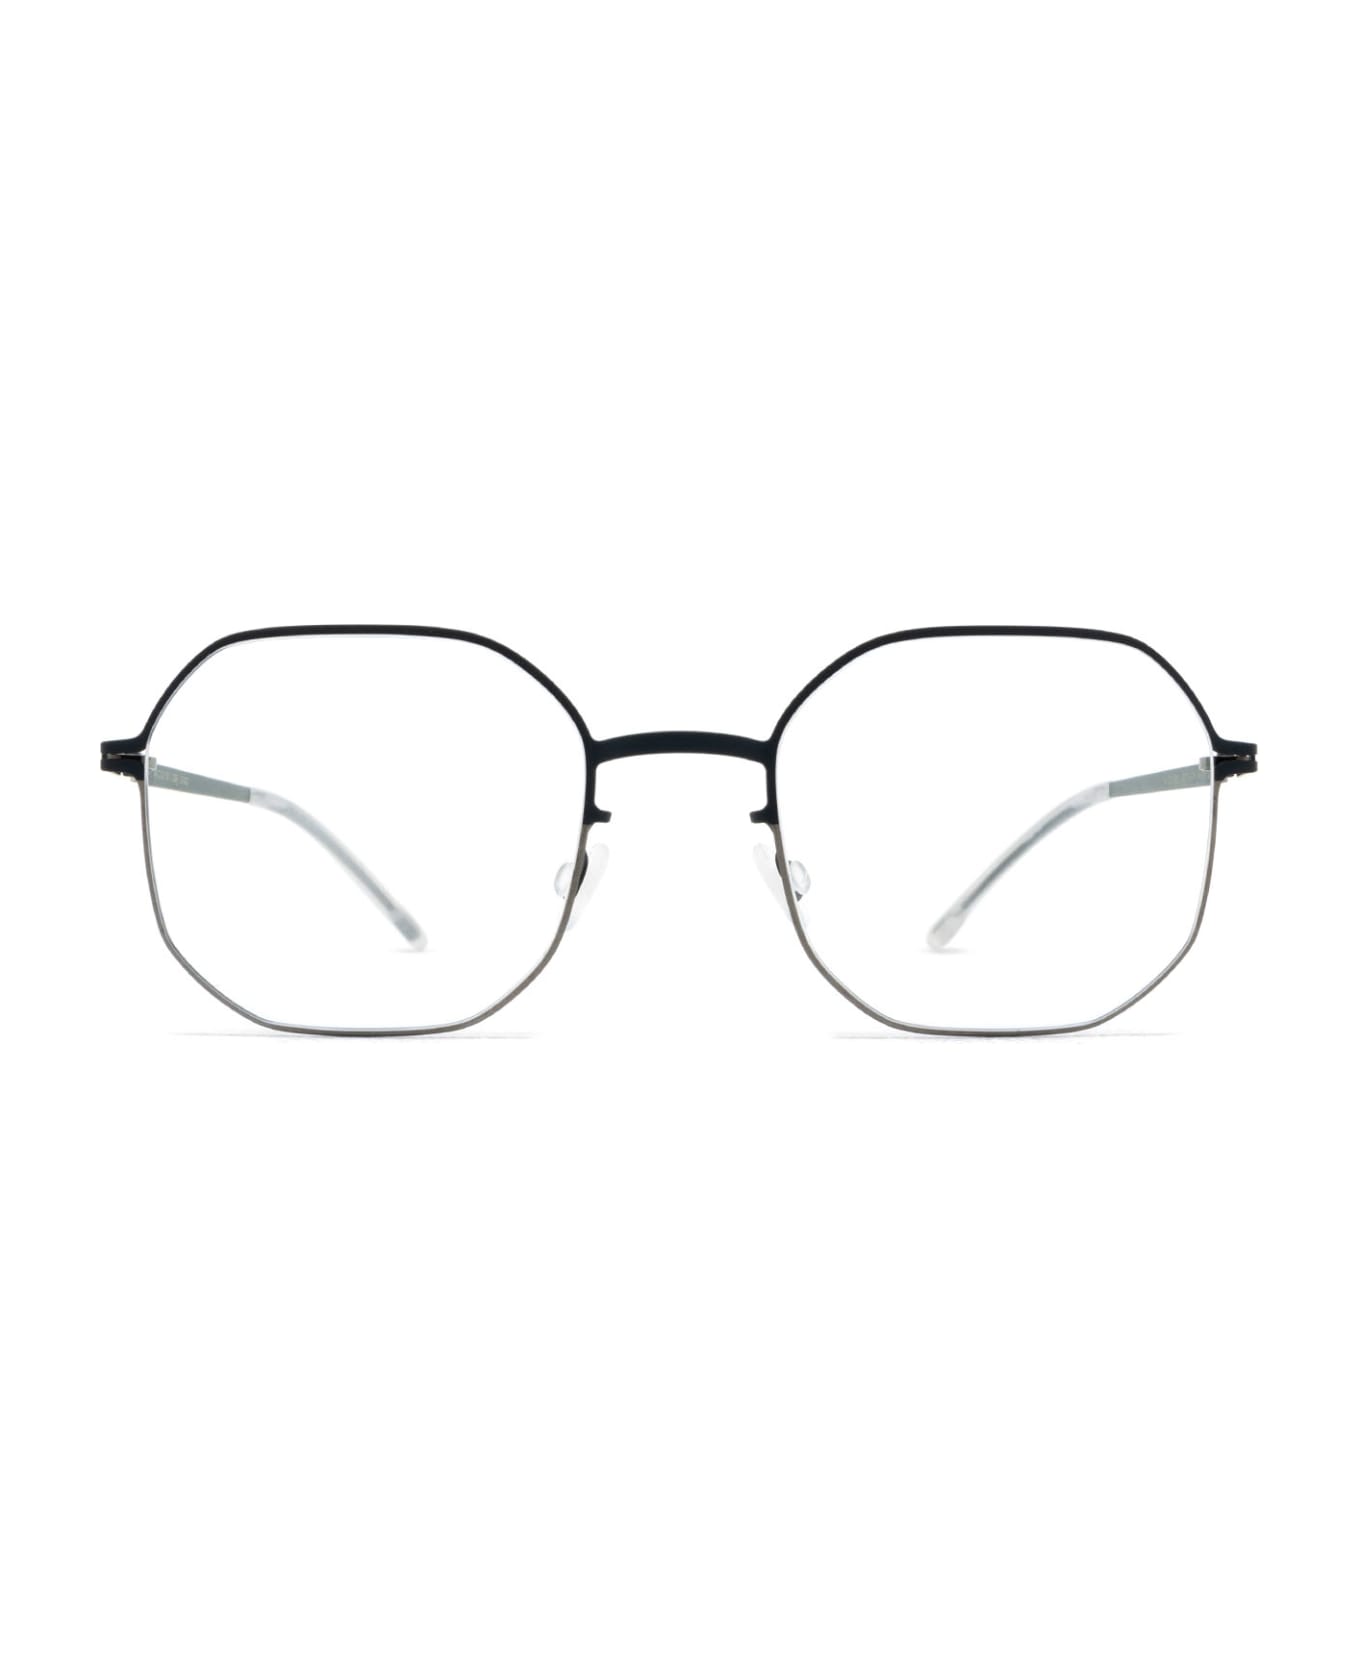 Mykita Cat Shiny Graphite/indigo Glasses - Shiny Graphite/Indigo アイウェア